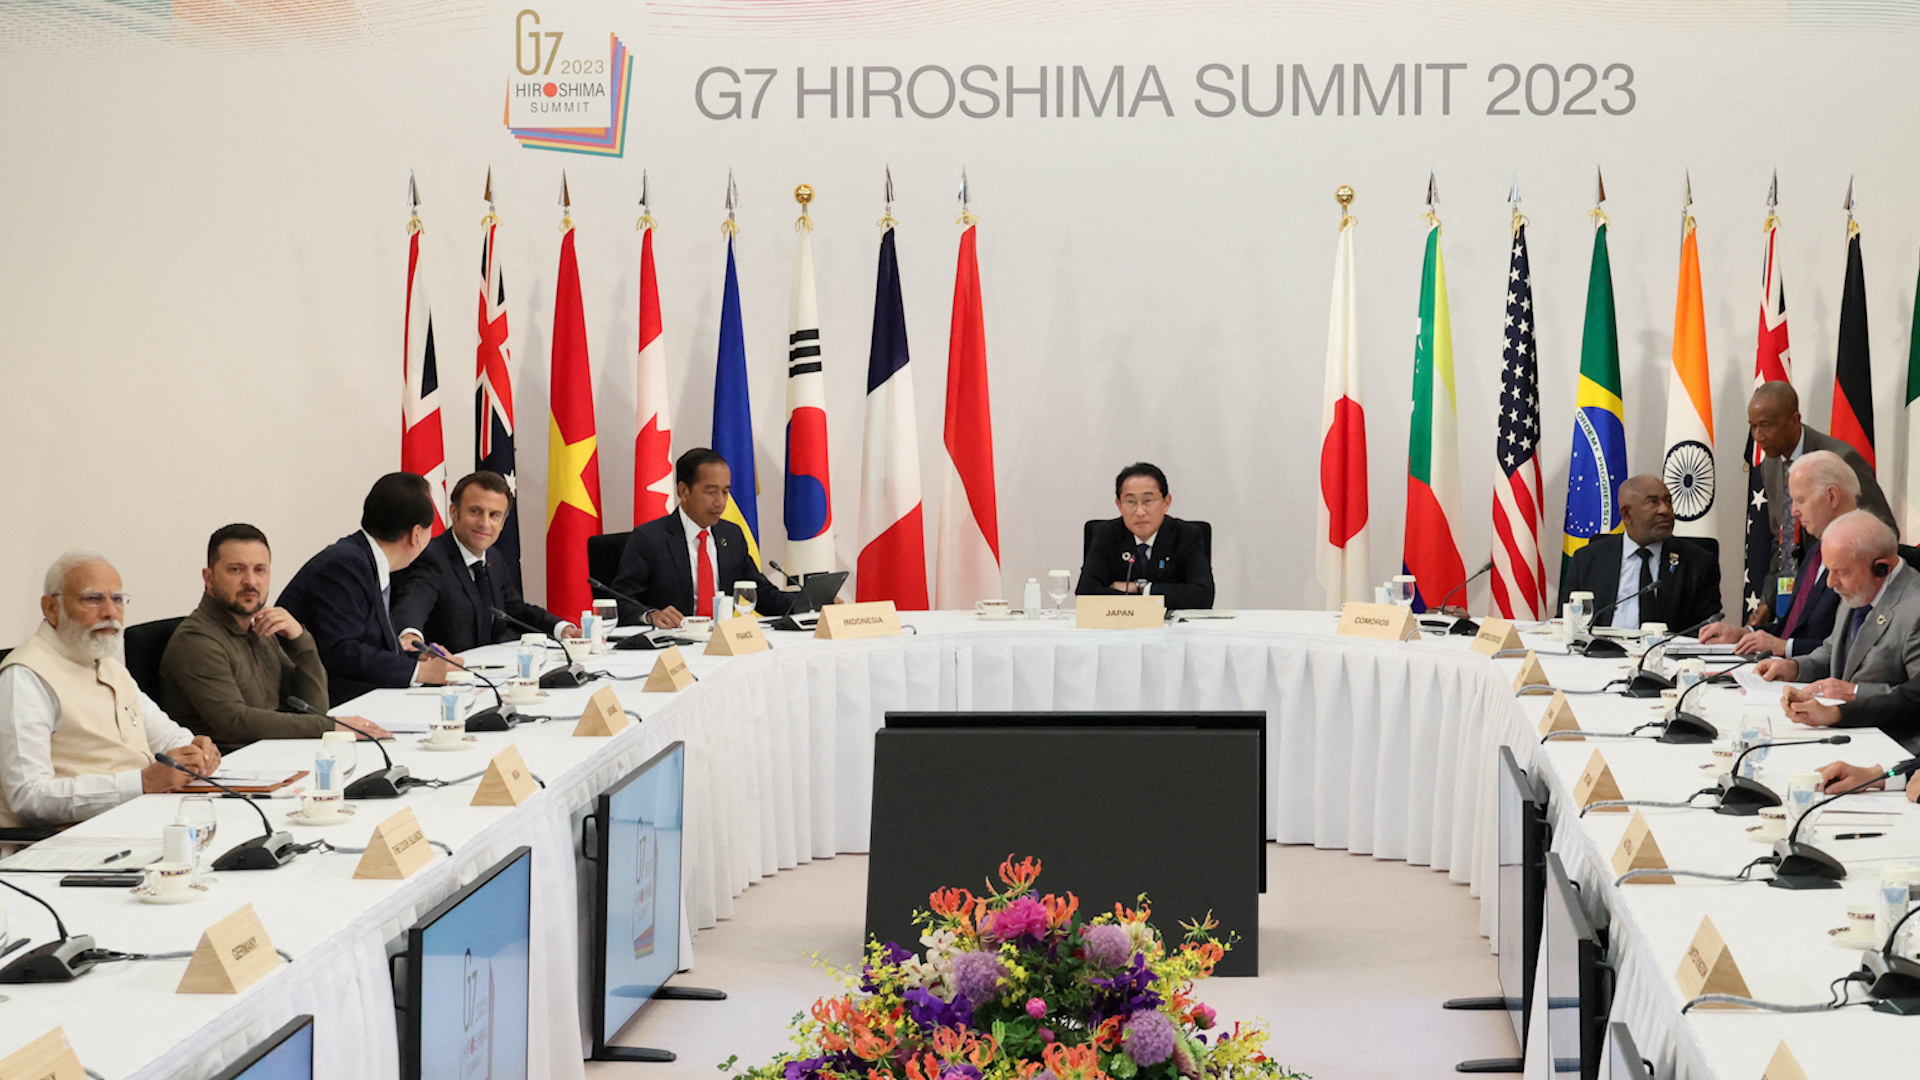 Trung Quốc triệu tập đại sứ Nhật Bản về tuyên bố của G7, Tokyo nói gì? - Ảnh 1.